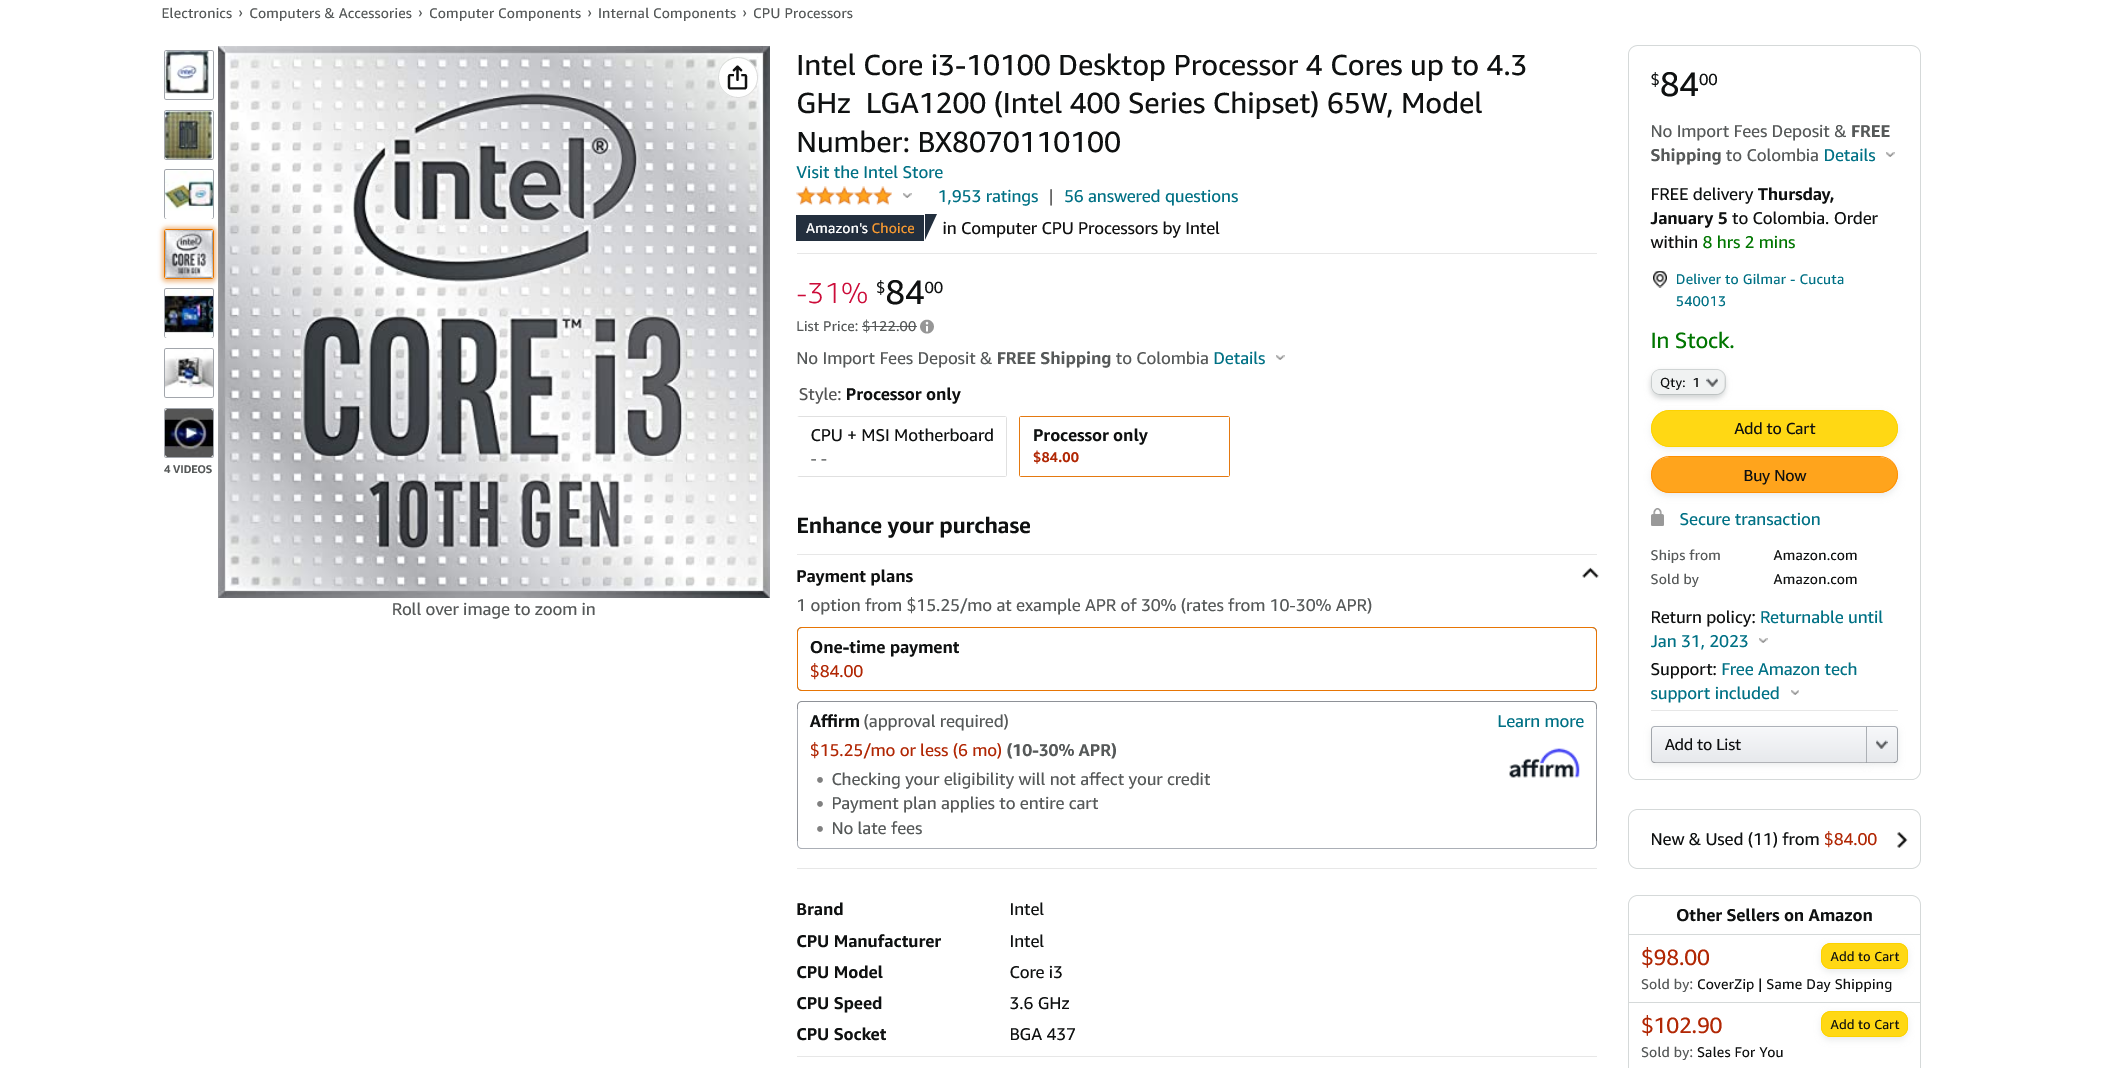 Screenshot 2022-12-21 at 17-57-26 Amazon.com Intel Core i3-10100 Desktop Processor 4 Cores up ...png